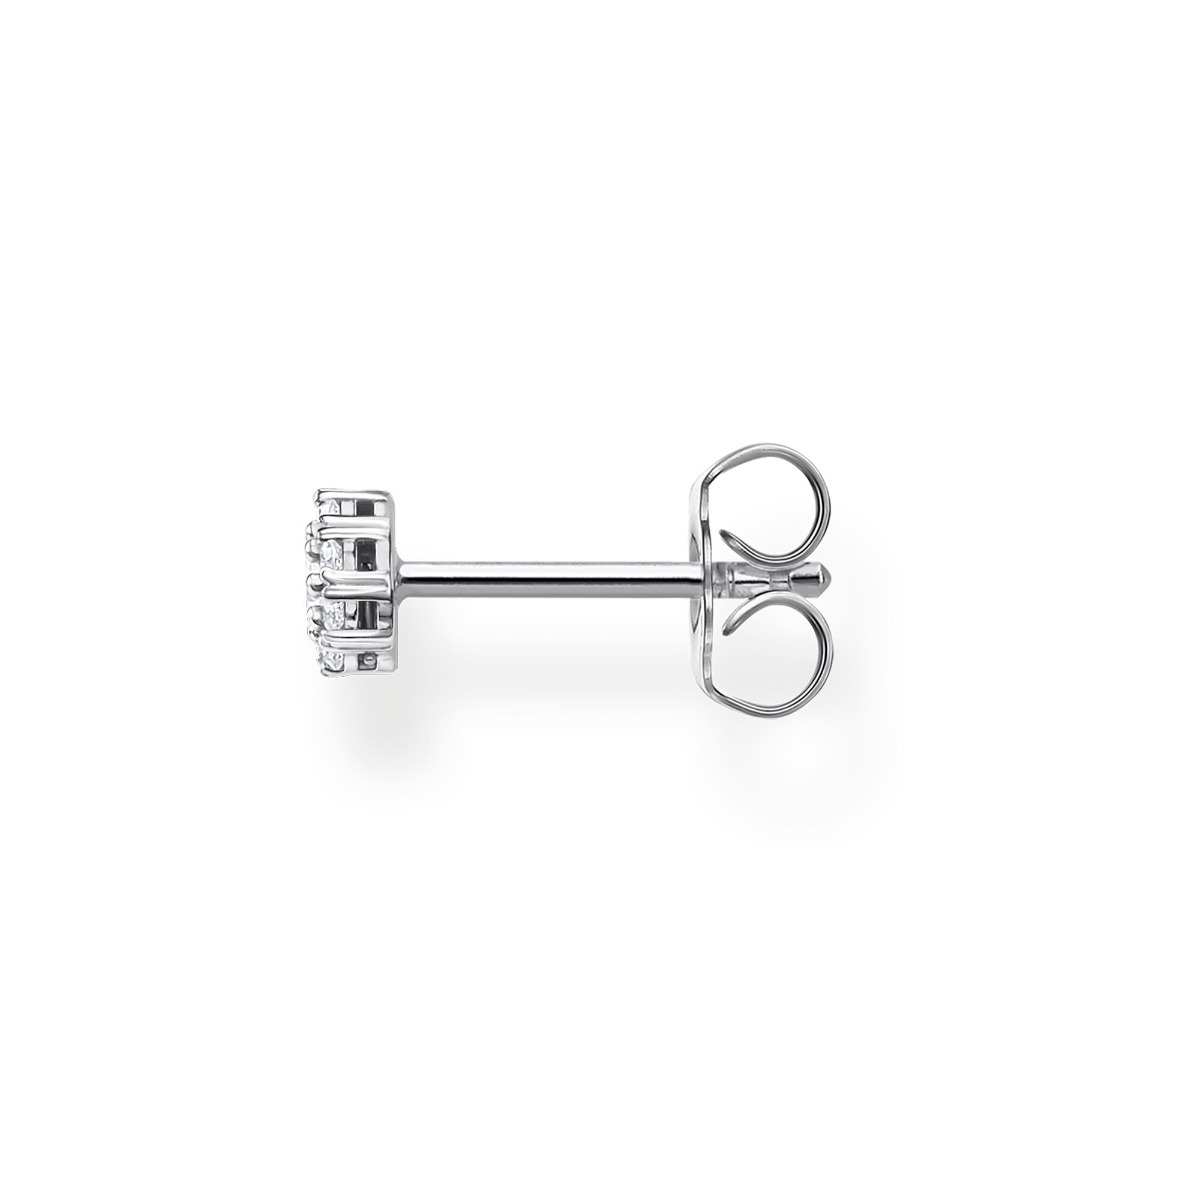 Thomas Sabo Single Earring - White Stone Halo in Silver H2141-051-14